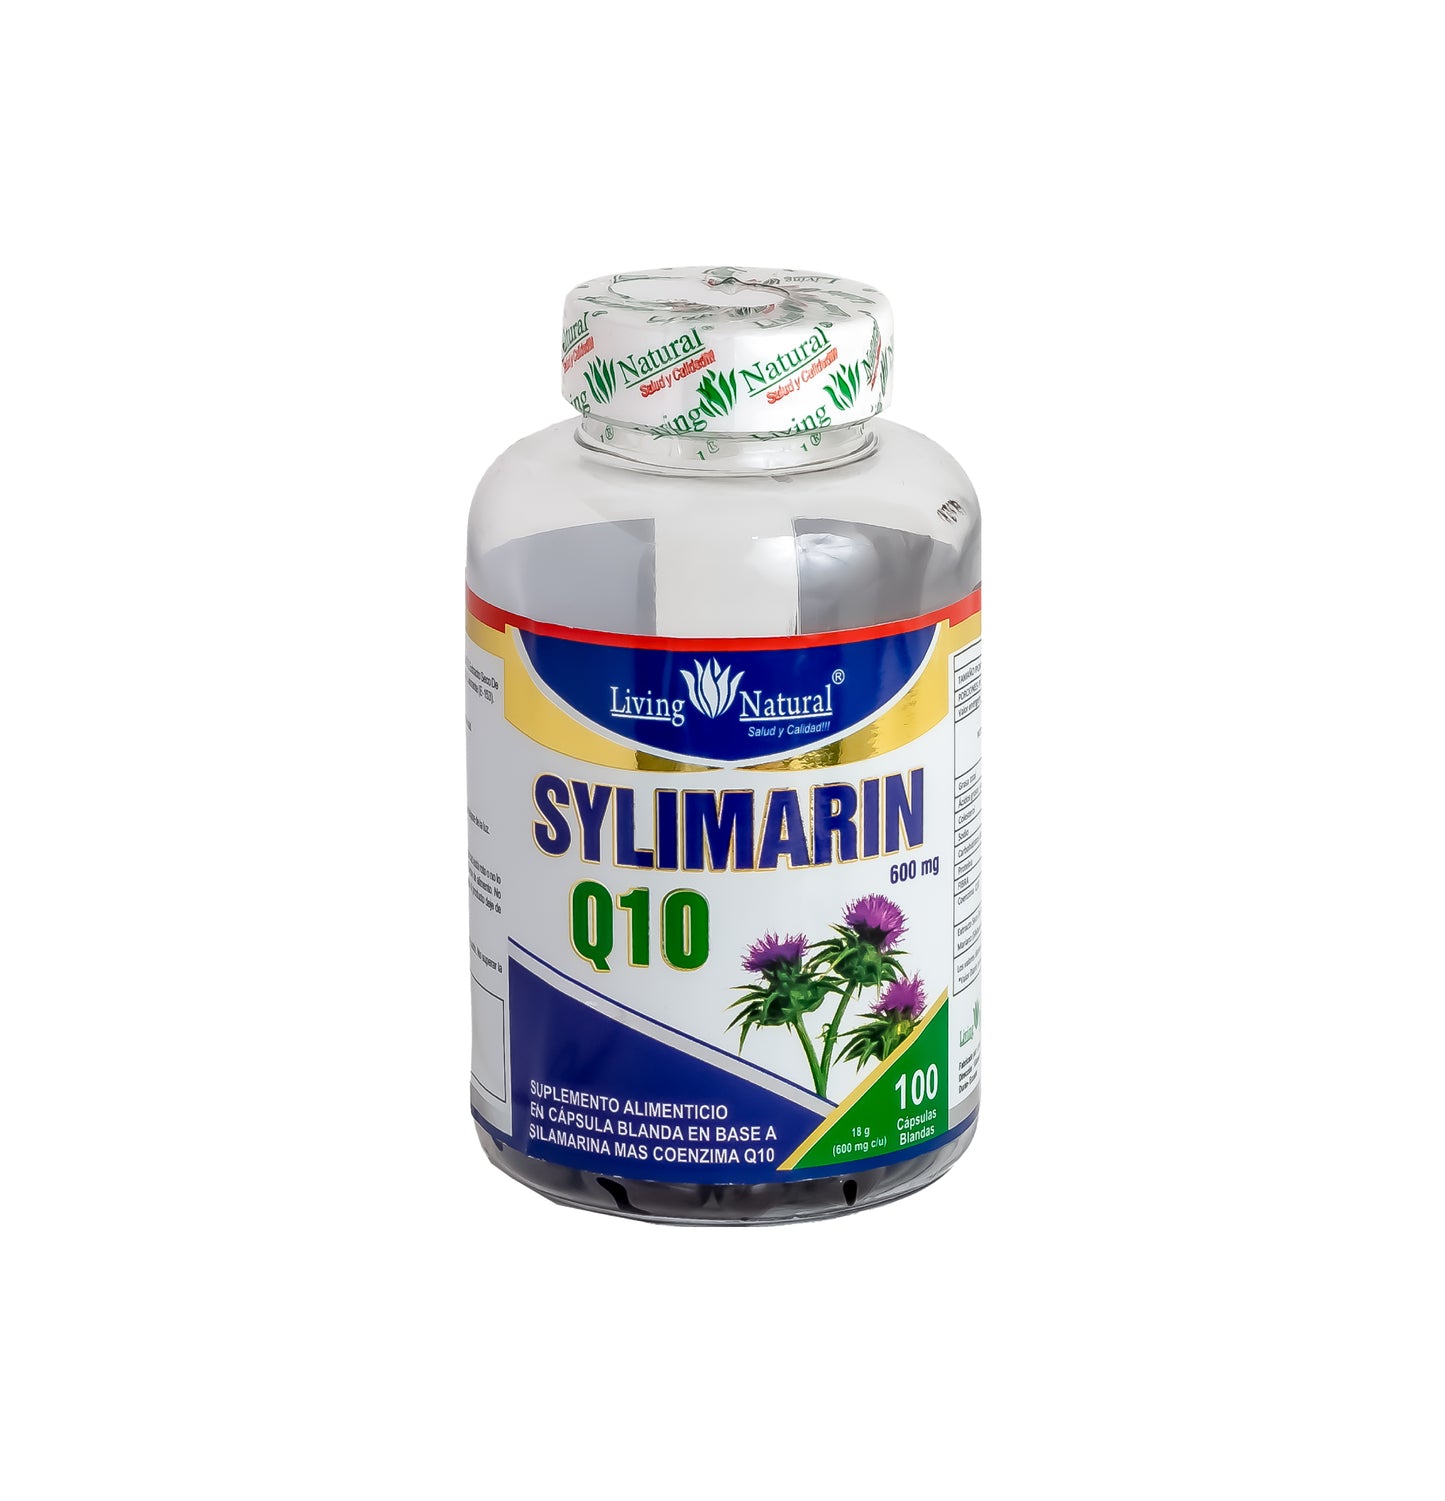 SYLIMARIN Q10 - X30, X60, X100